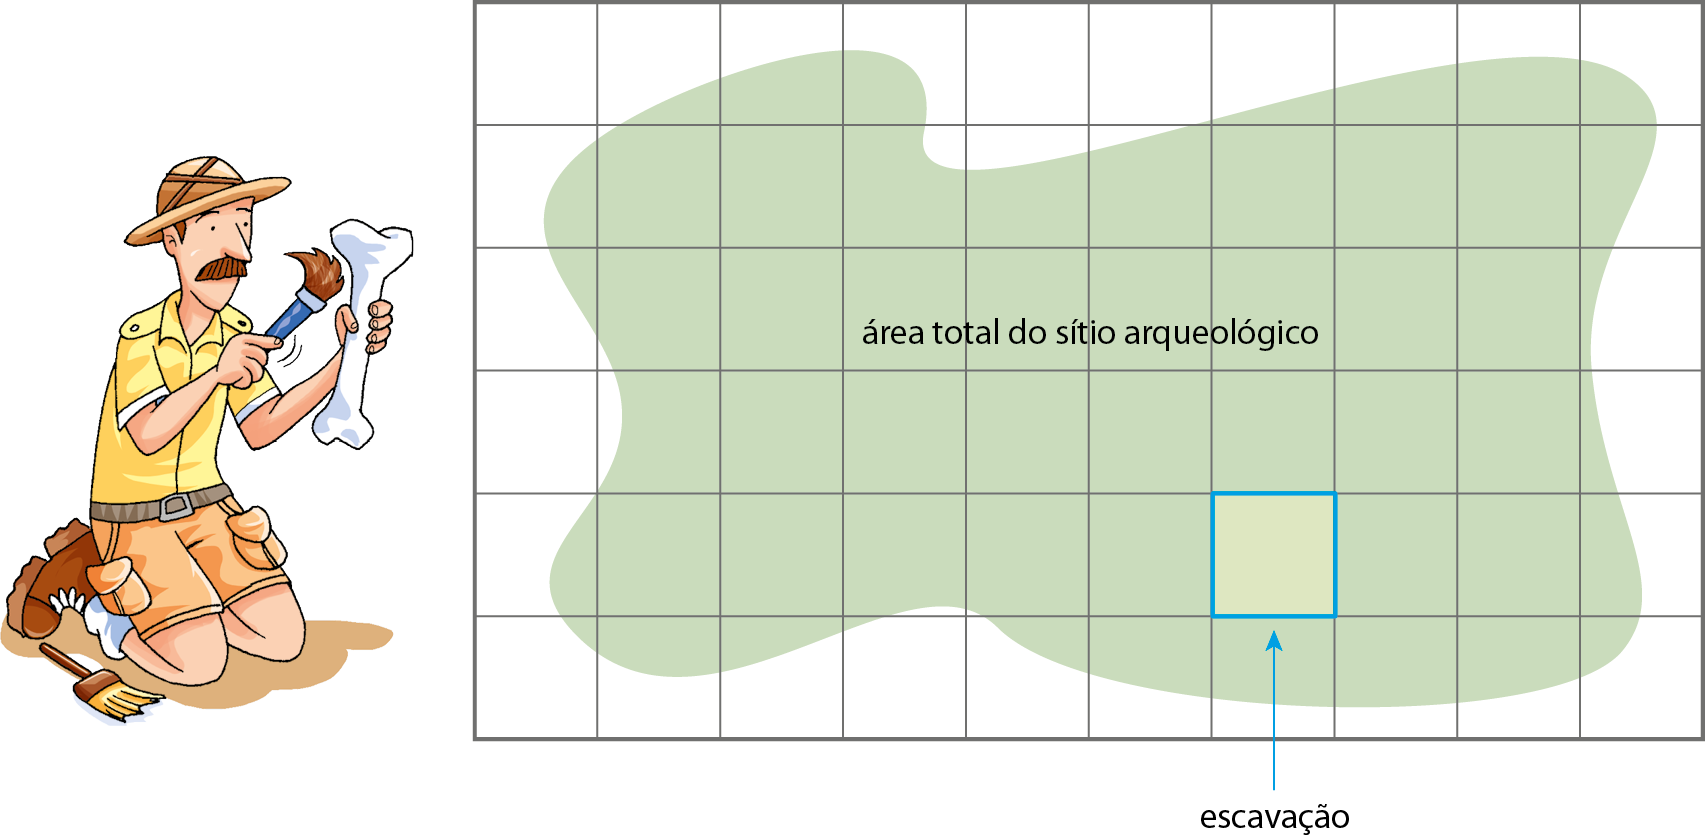 Ilustração. Malha quadriculada dividida em 6 linhas e 10 colunas. Sobre a malha, figura verde com as extremidades onduladas indica a área total do sítio arqueológico, ocupando, aproximadamente, 37 quadradinhos. Na quinta linha, sétimo quadradinho, dentro da área verde, a indicação de uma área de escavação.